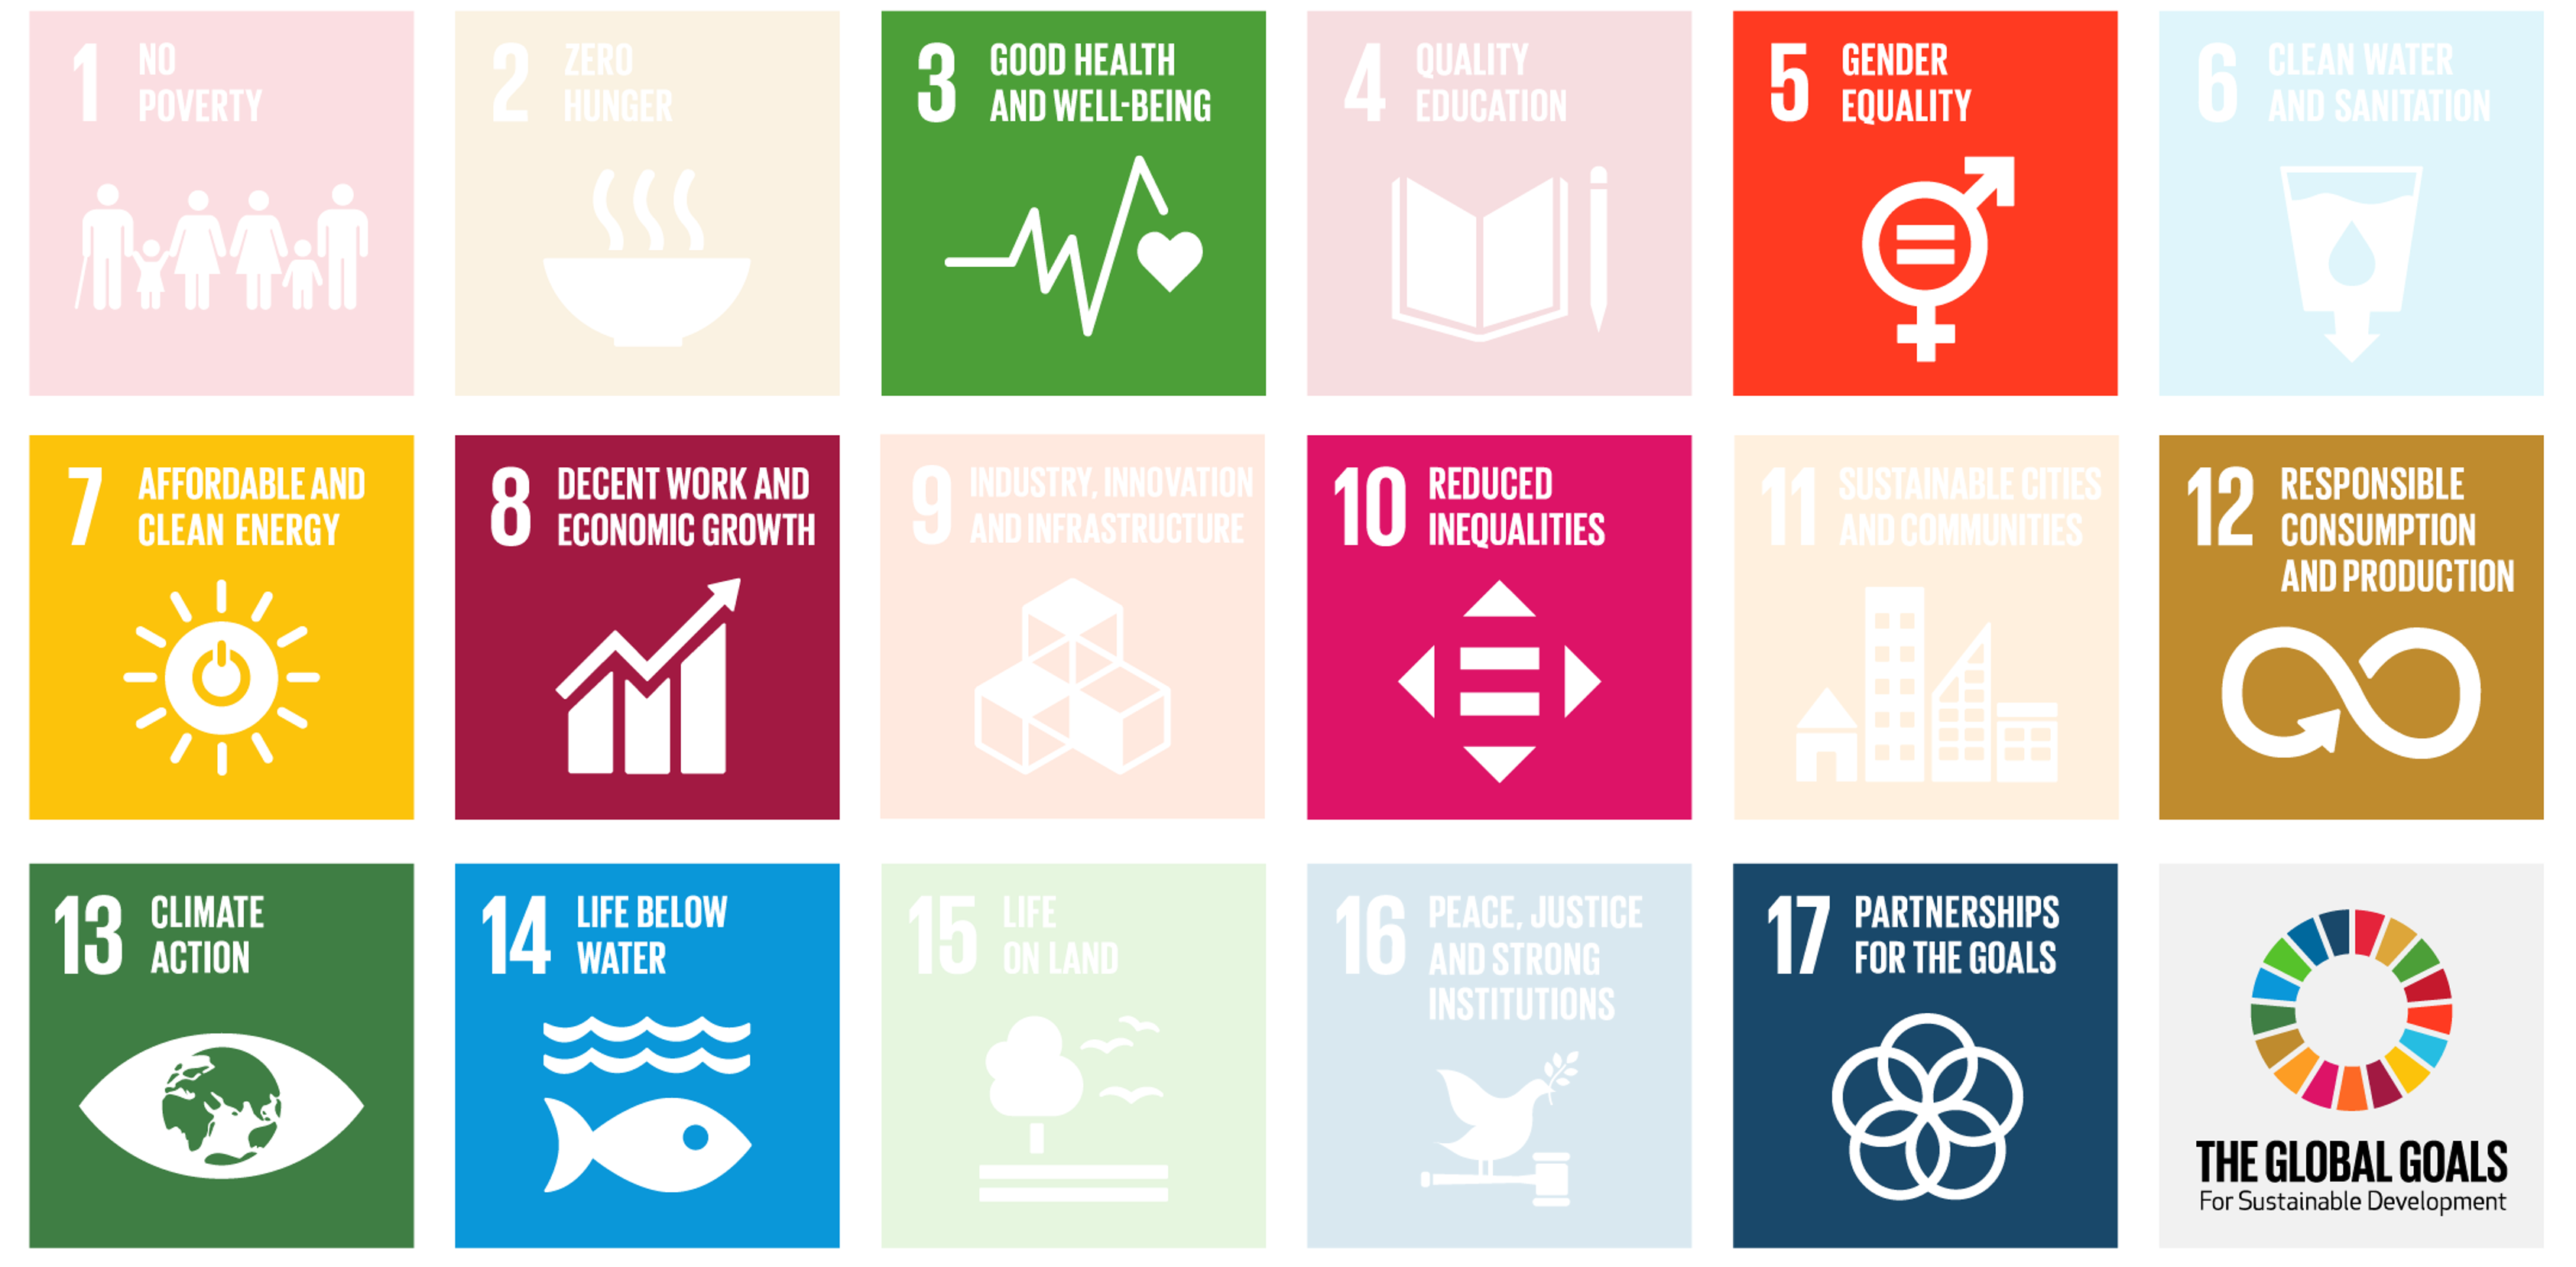 SDG_ny version 2023.png